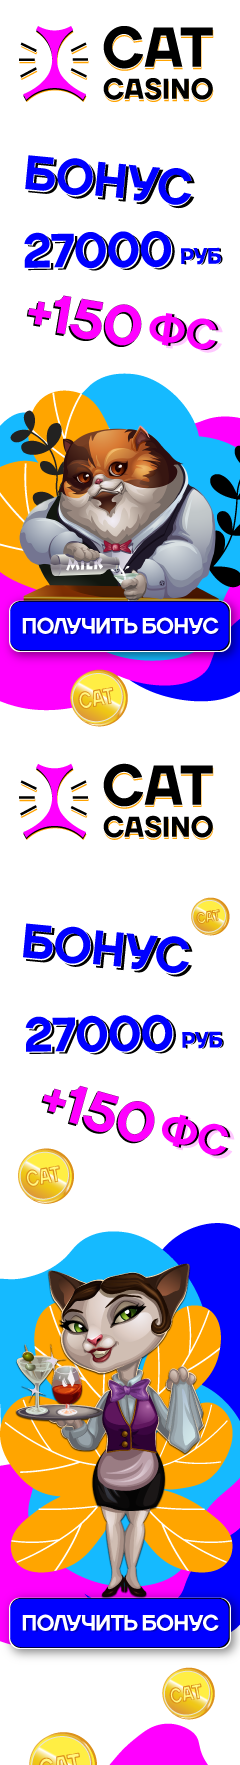 Cat kasino